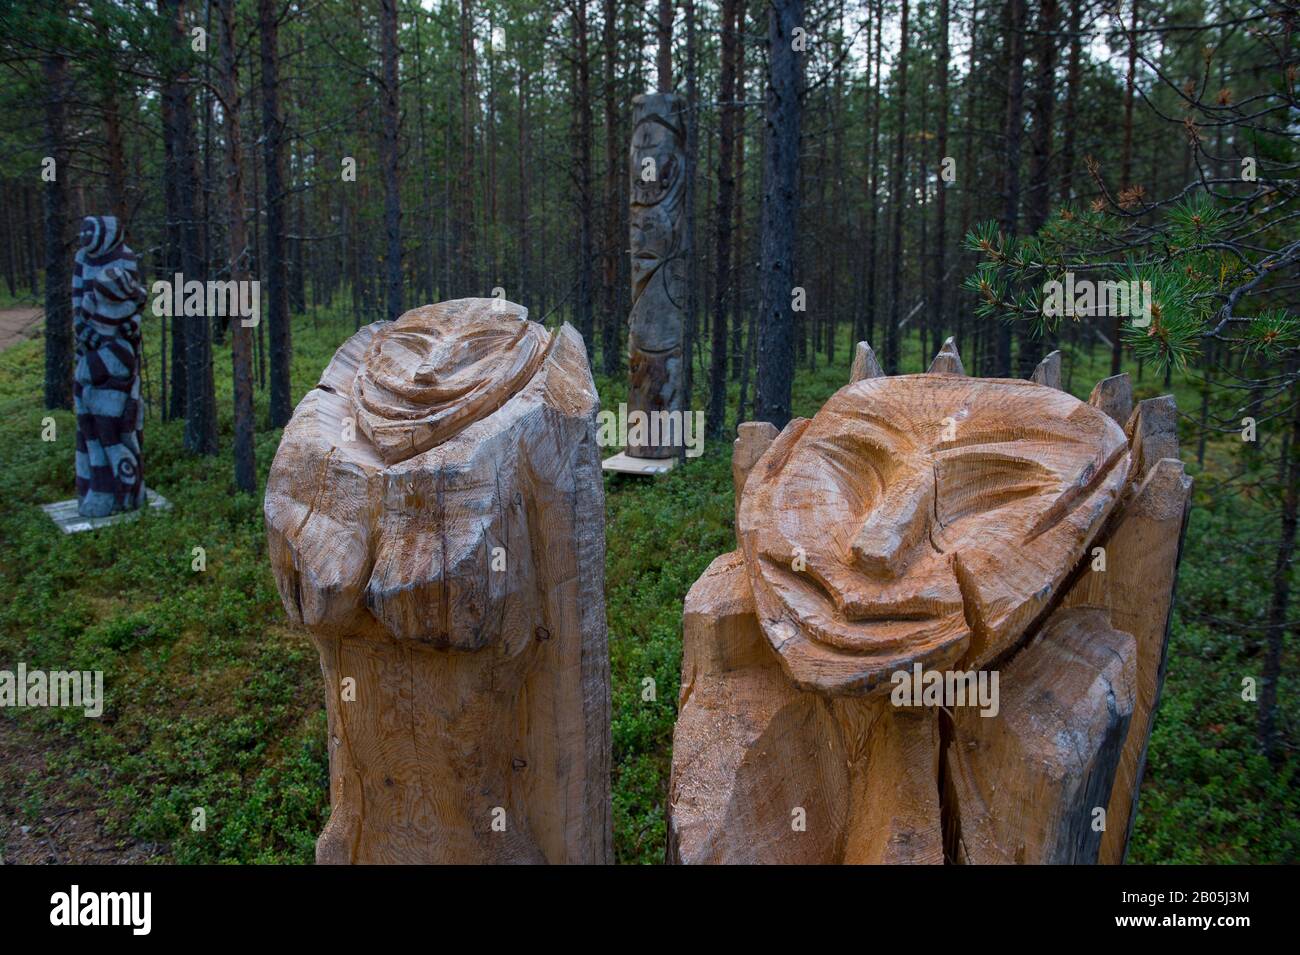 Holzskulpturen, die im Freien im Siida-Museum in Inari ausgestellt sind, das nationale Museum der samischen Bevölkerung in Lappland, Nordfinnland Stockfoto